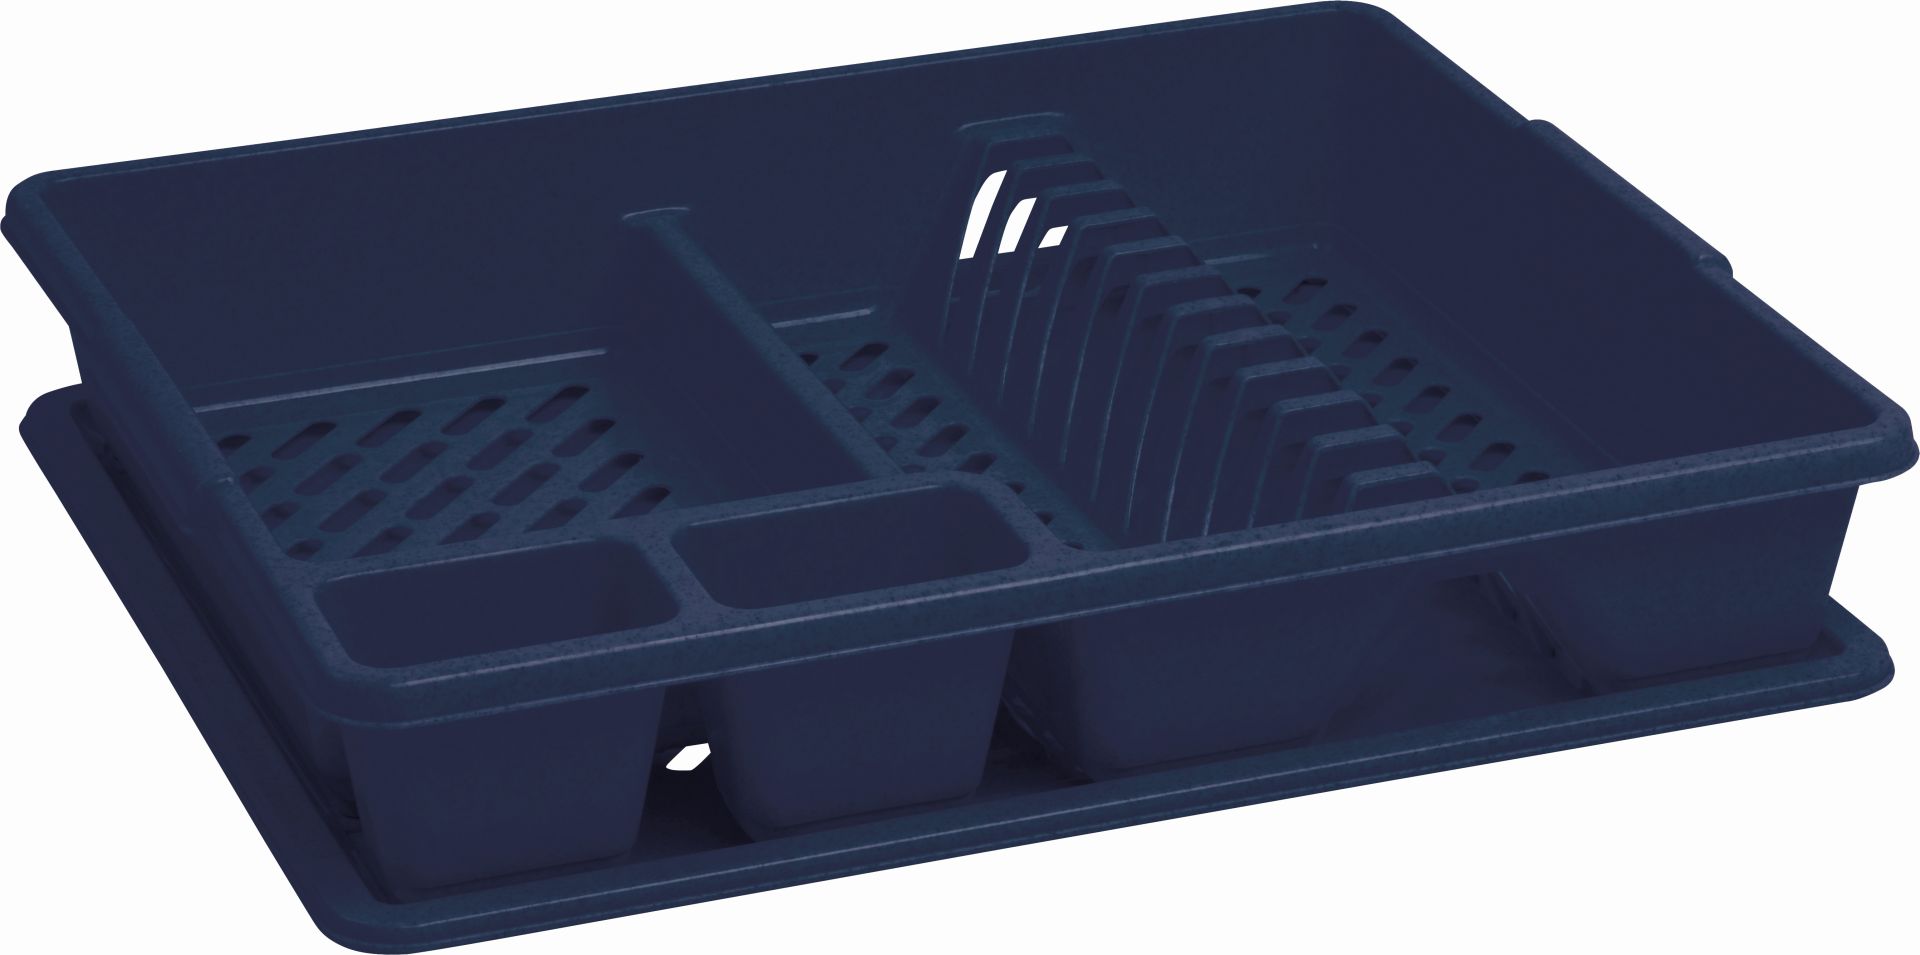 CURVER Odkapávač s podnosem velký, 45 x 38 x 8,8 cm, tmavě modrý 13401-X19